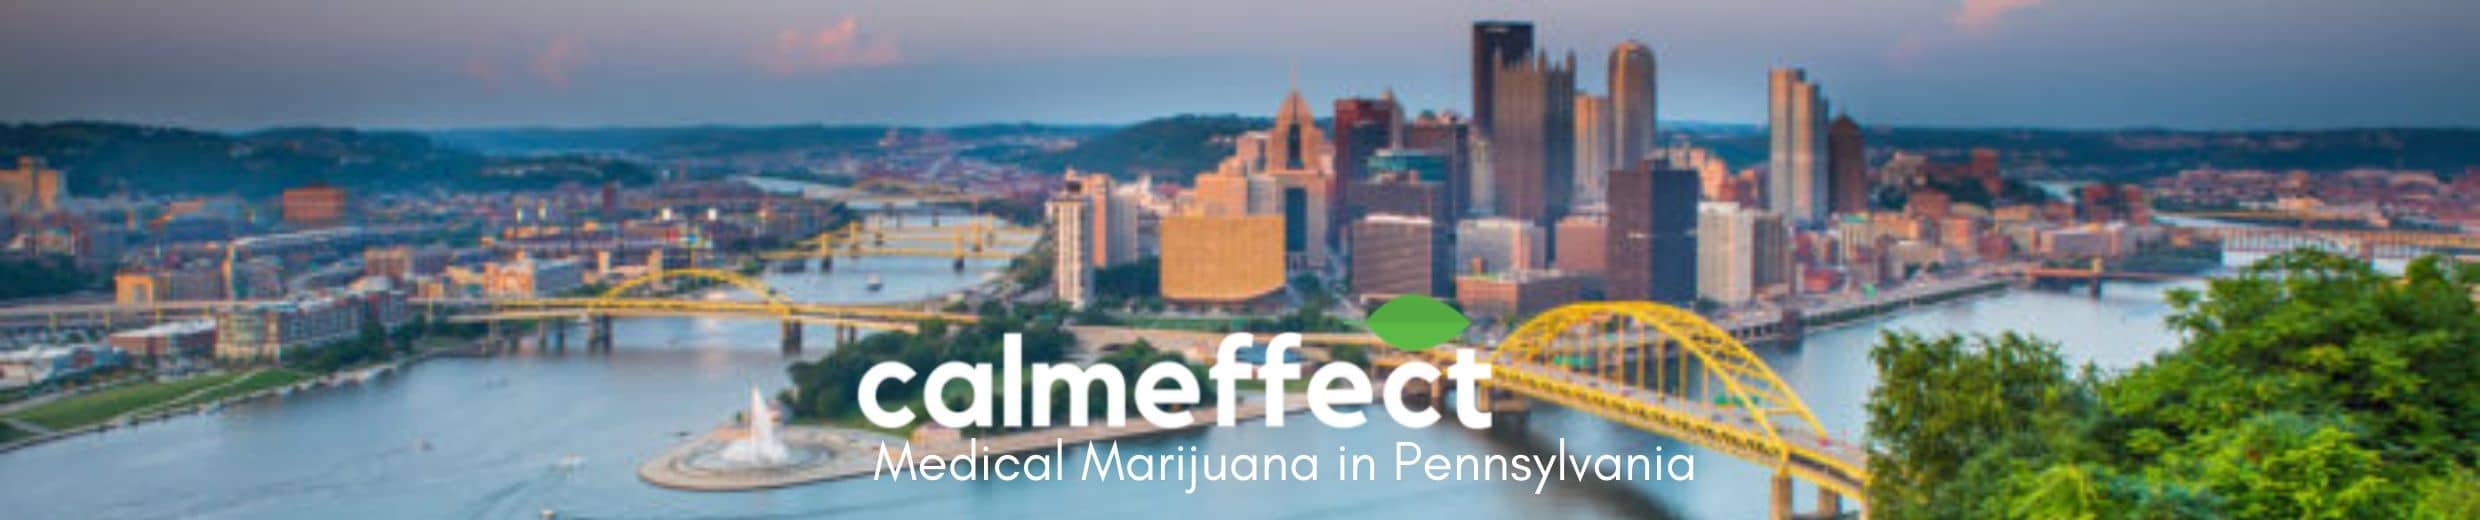 Medical Marijuana in Pennsylvania